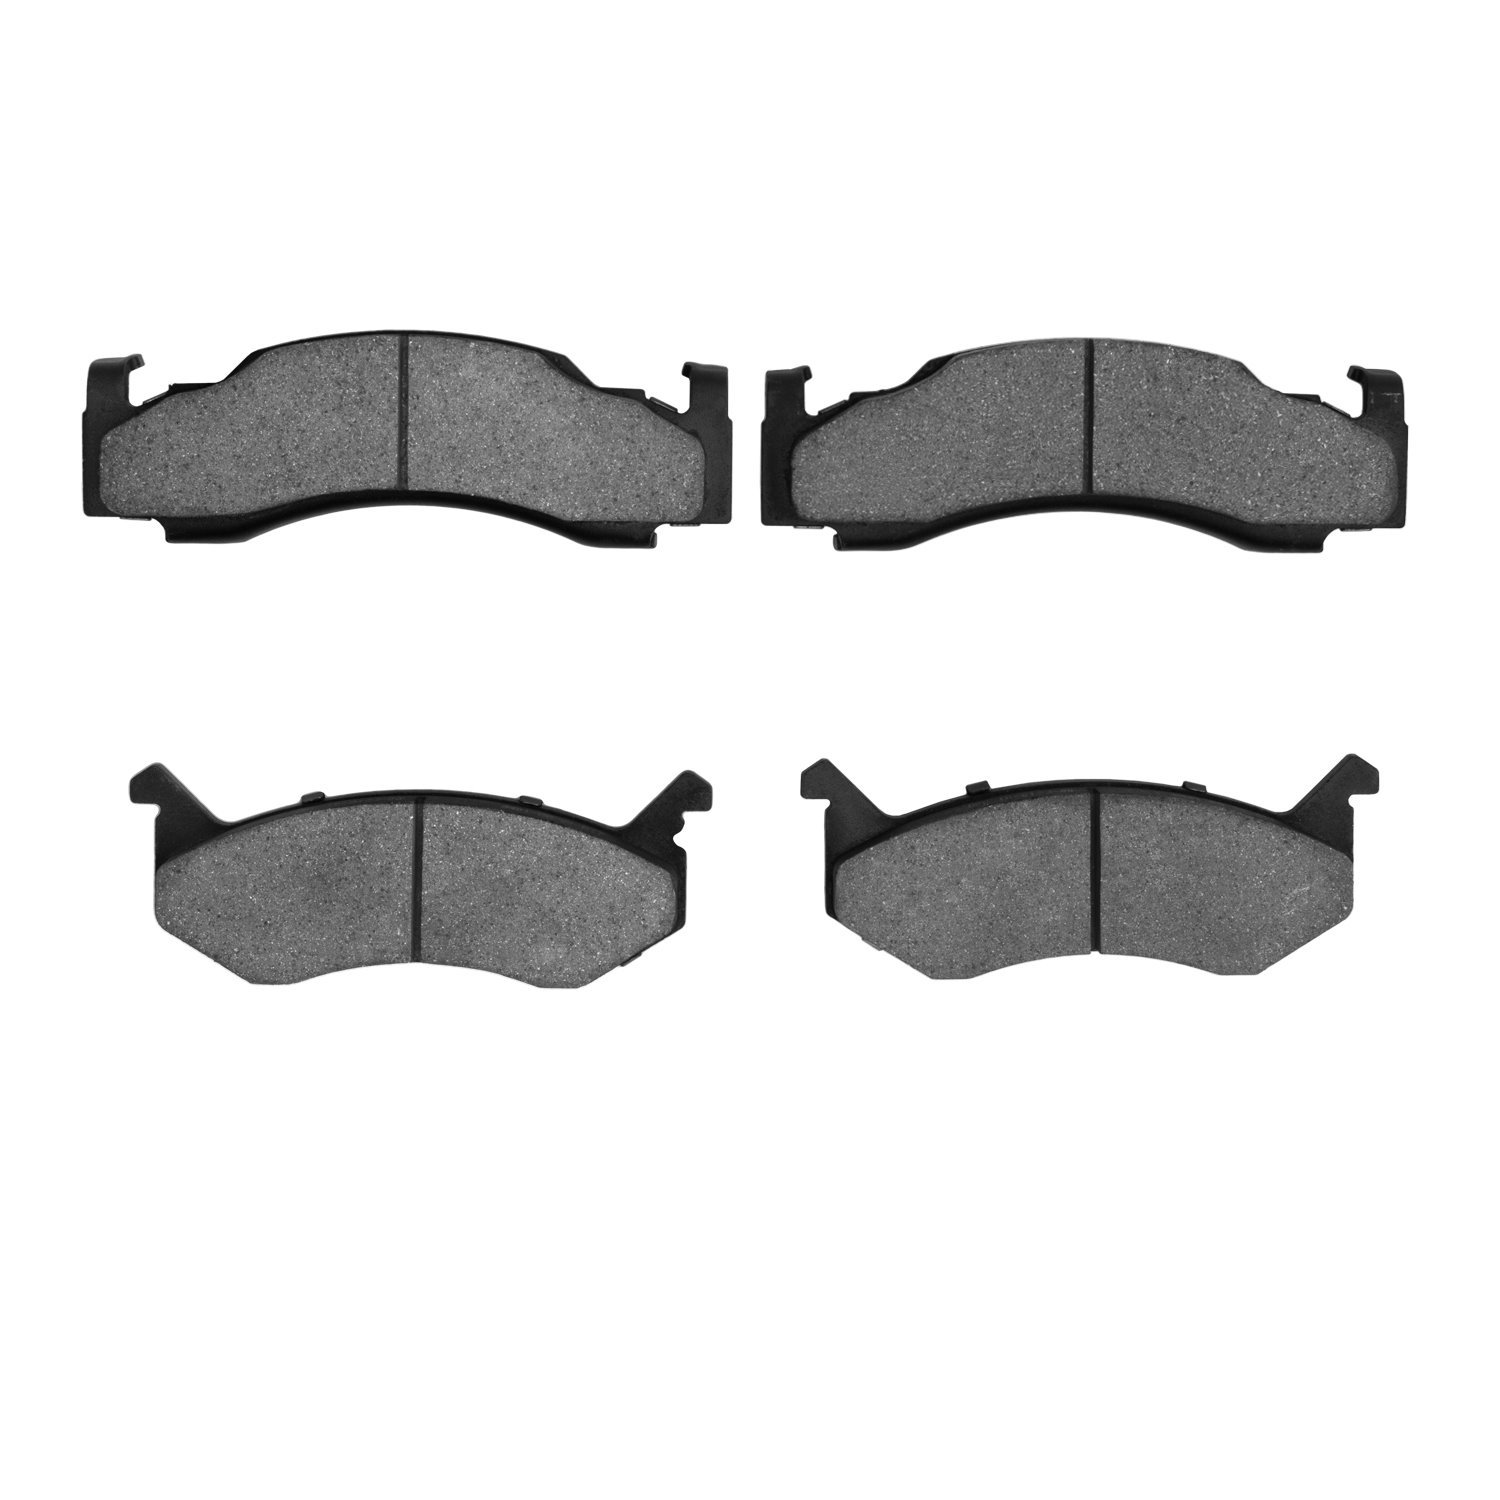 1214-0123-00 Heavy-Duty Semi-Metallic Brake Pads, 1973-1997 Mopar, Position: Front